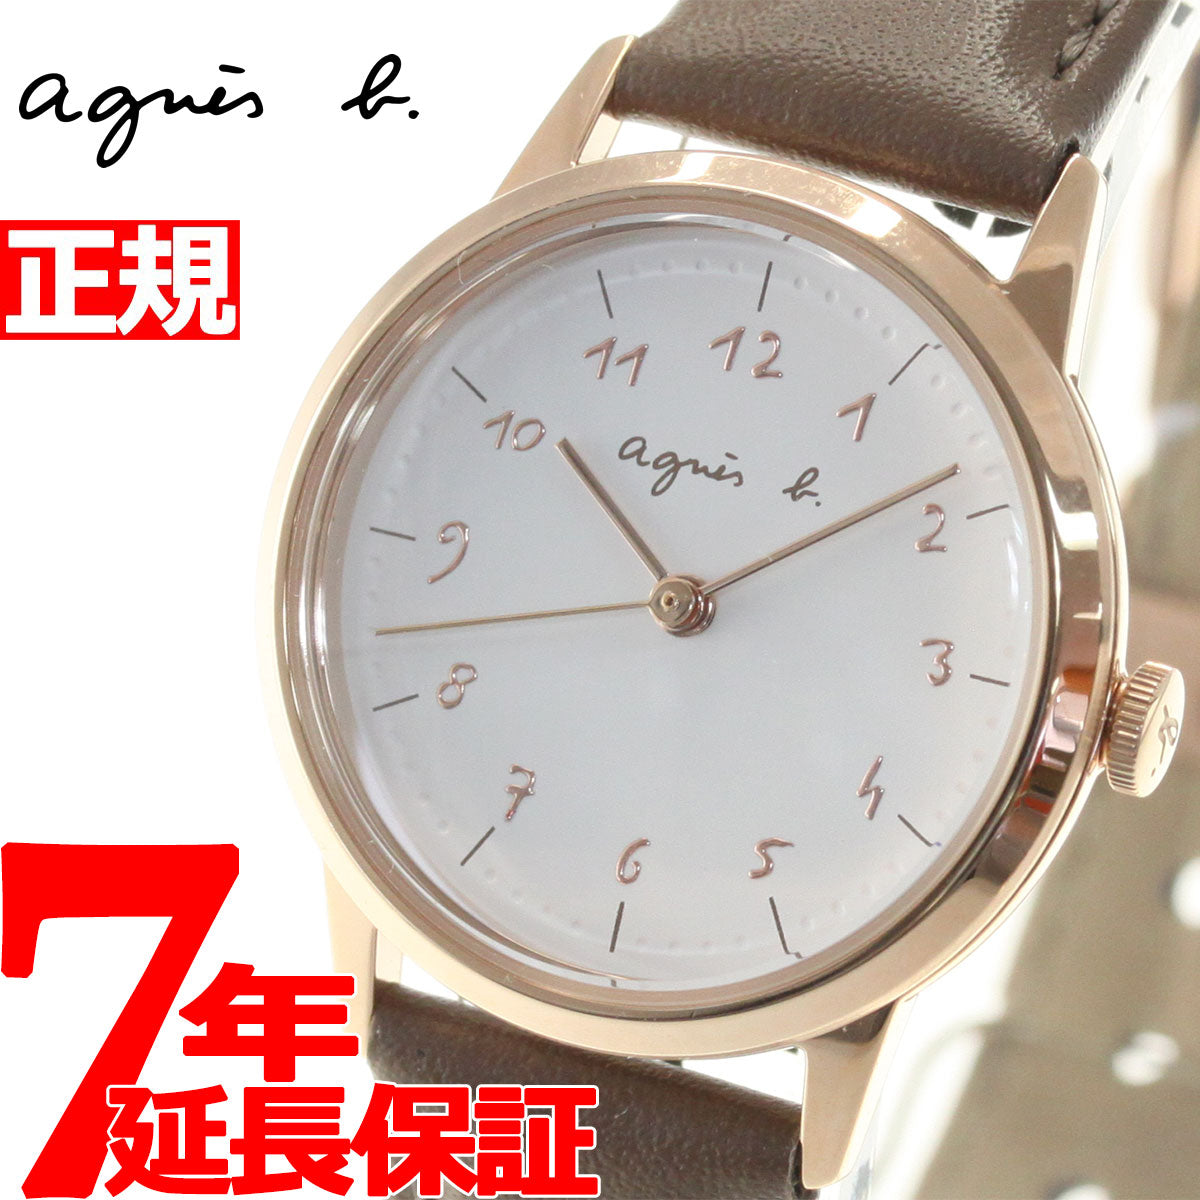 アニエスベー 時計 レディース 腕時計 agnes b. マルチェロ Marcello 